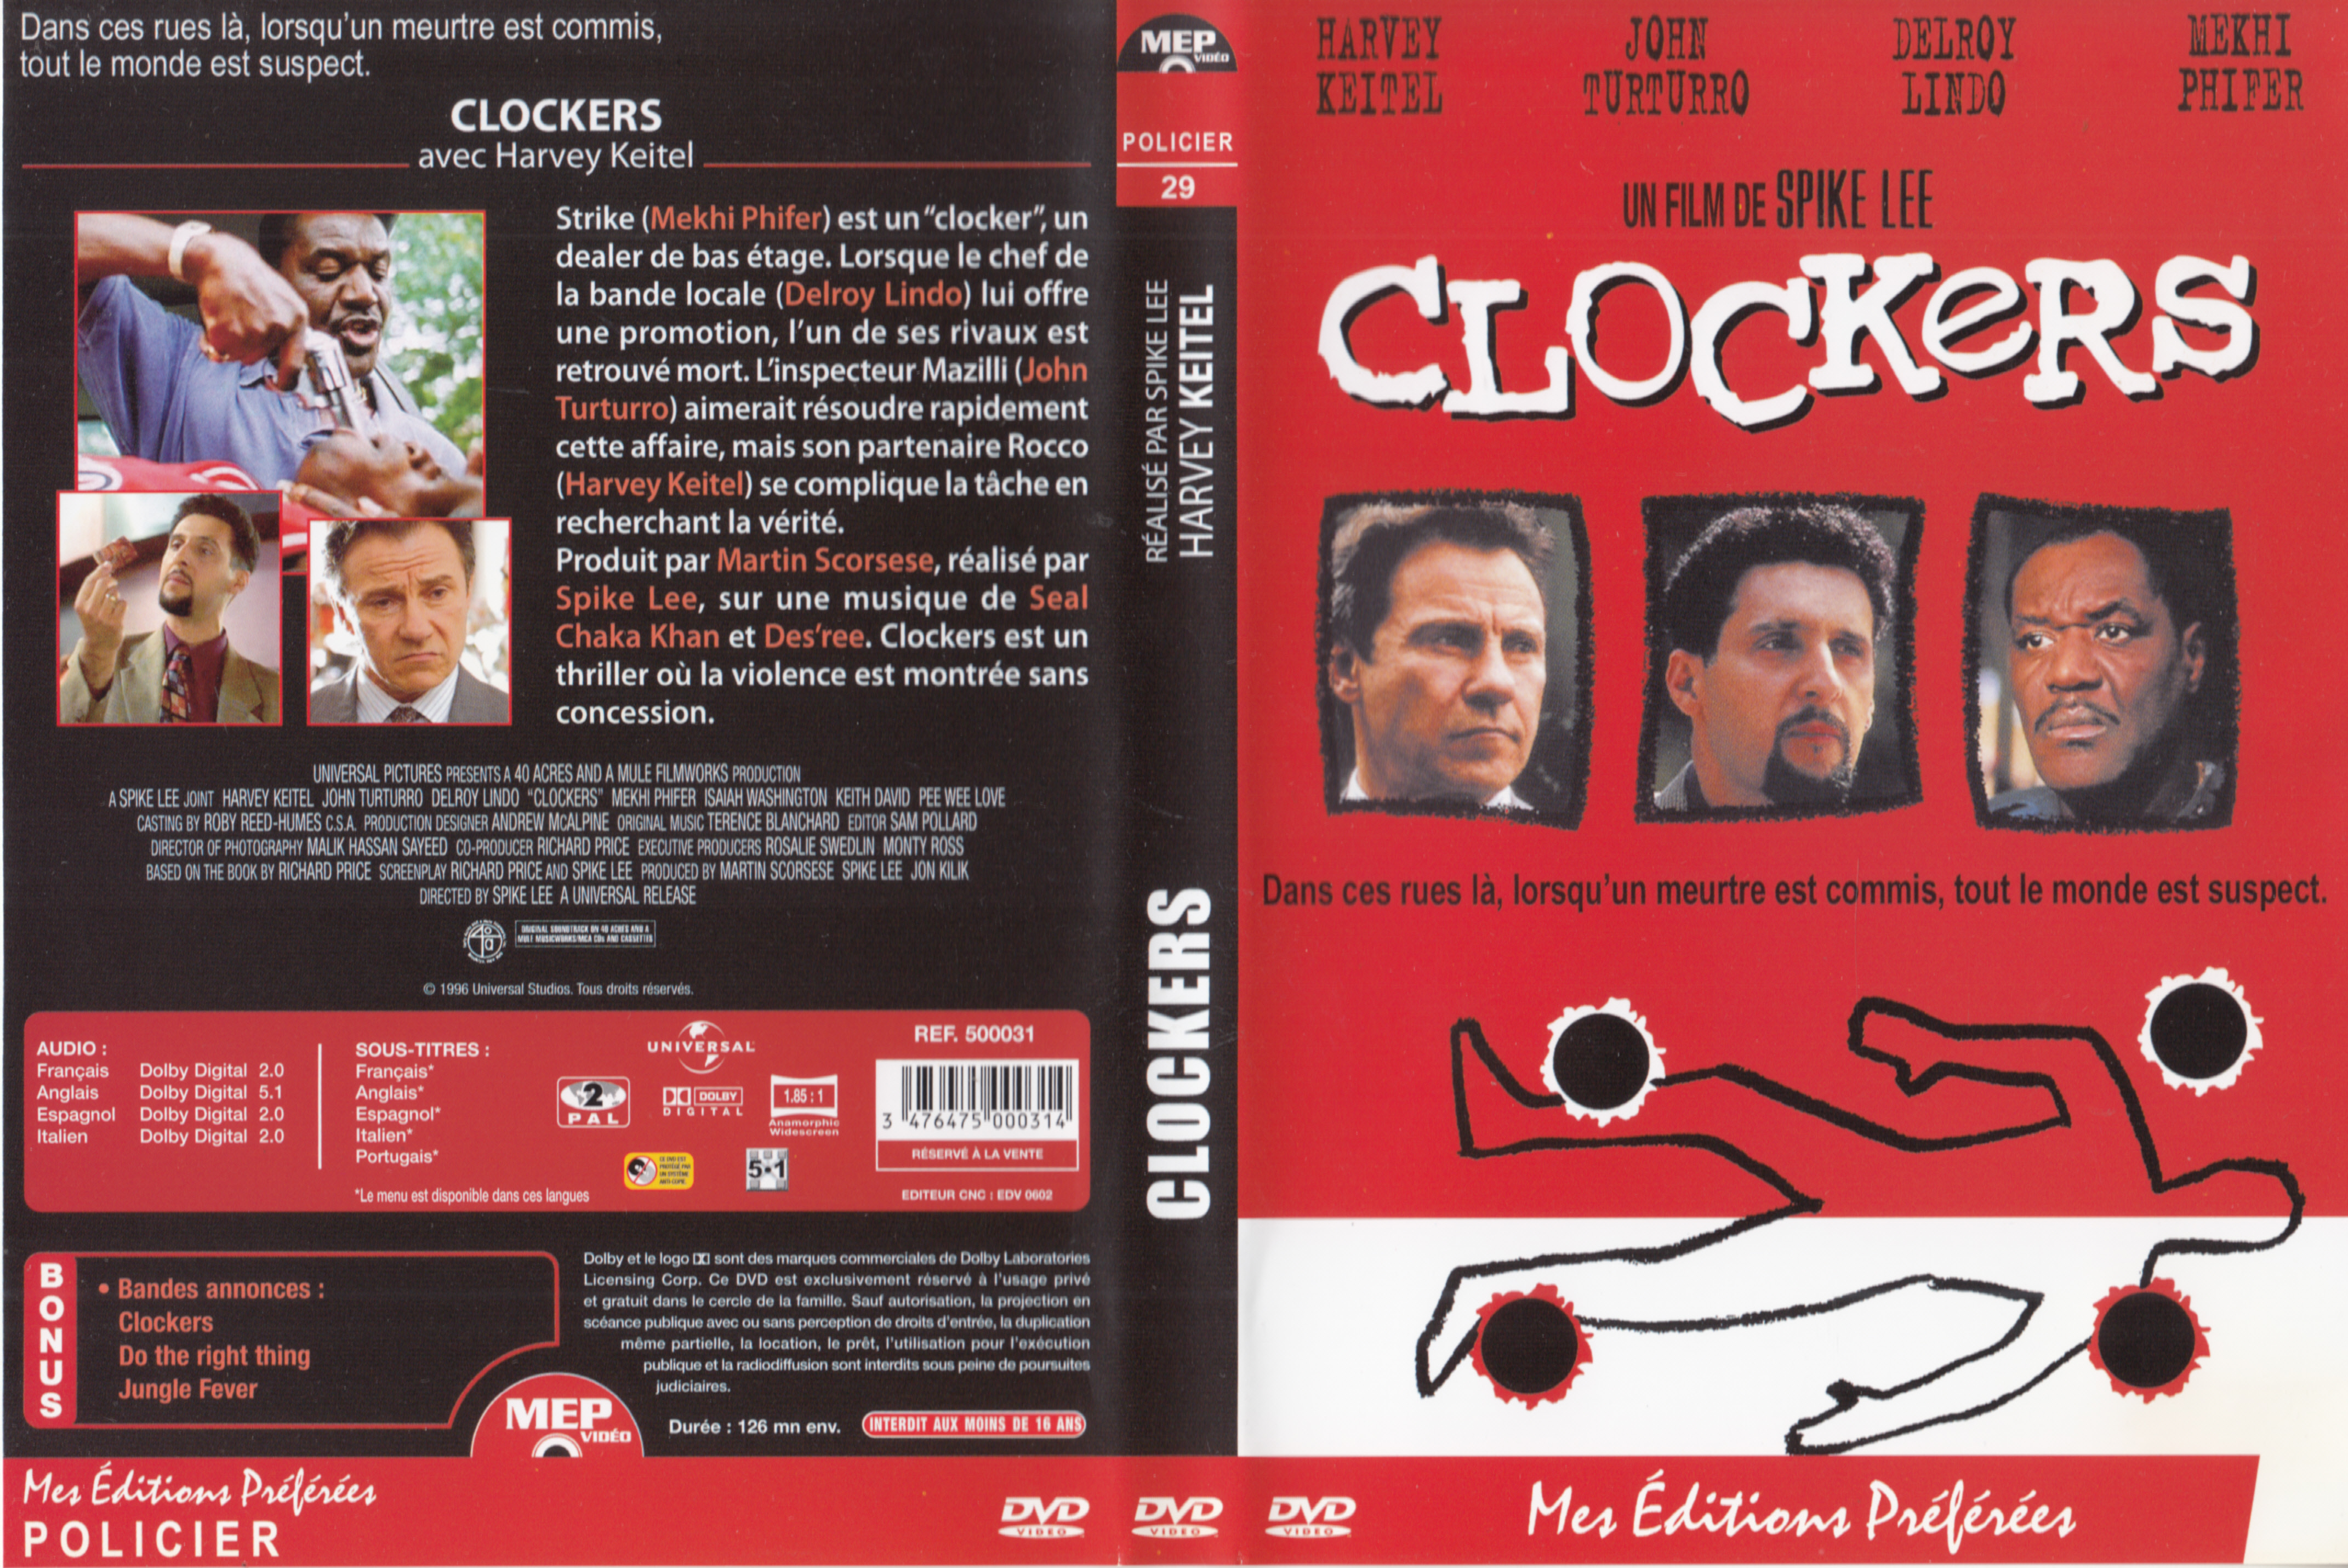 Jaquette DVD de Elementaire mon cher Lock Holmes v2 - Cinéma Passion